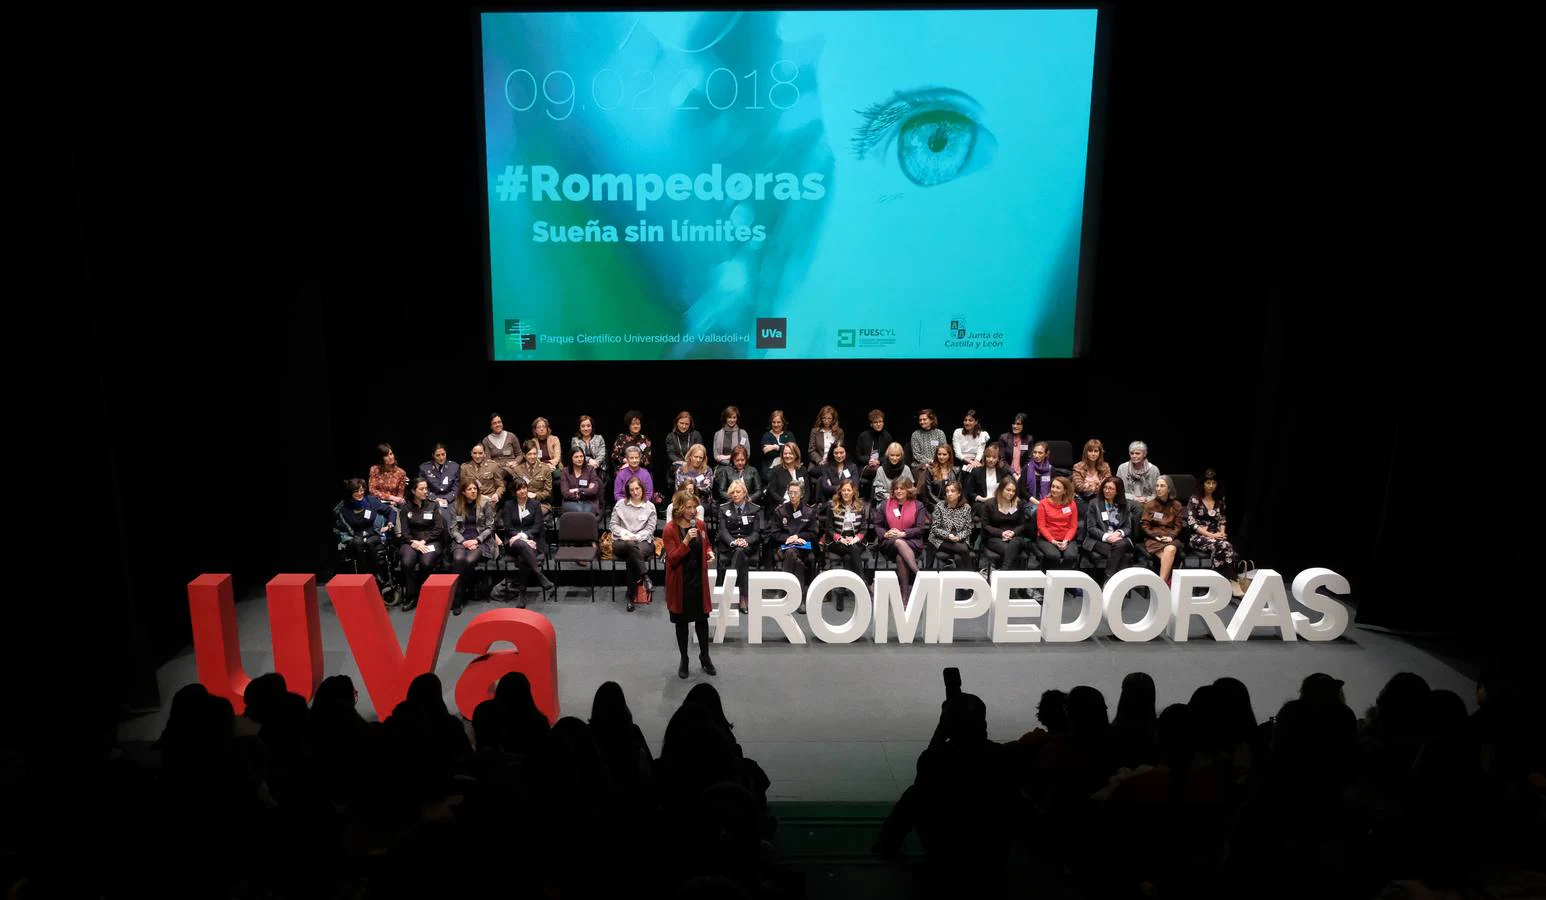 Cincuenta mujeres transmiten su ejemplo a más de 400 escolares de entre 9 y 18 años, en una cita celebrada en el auditorio Miguel Delibes de Valladolid